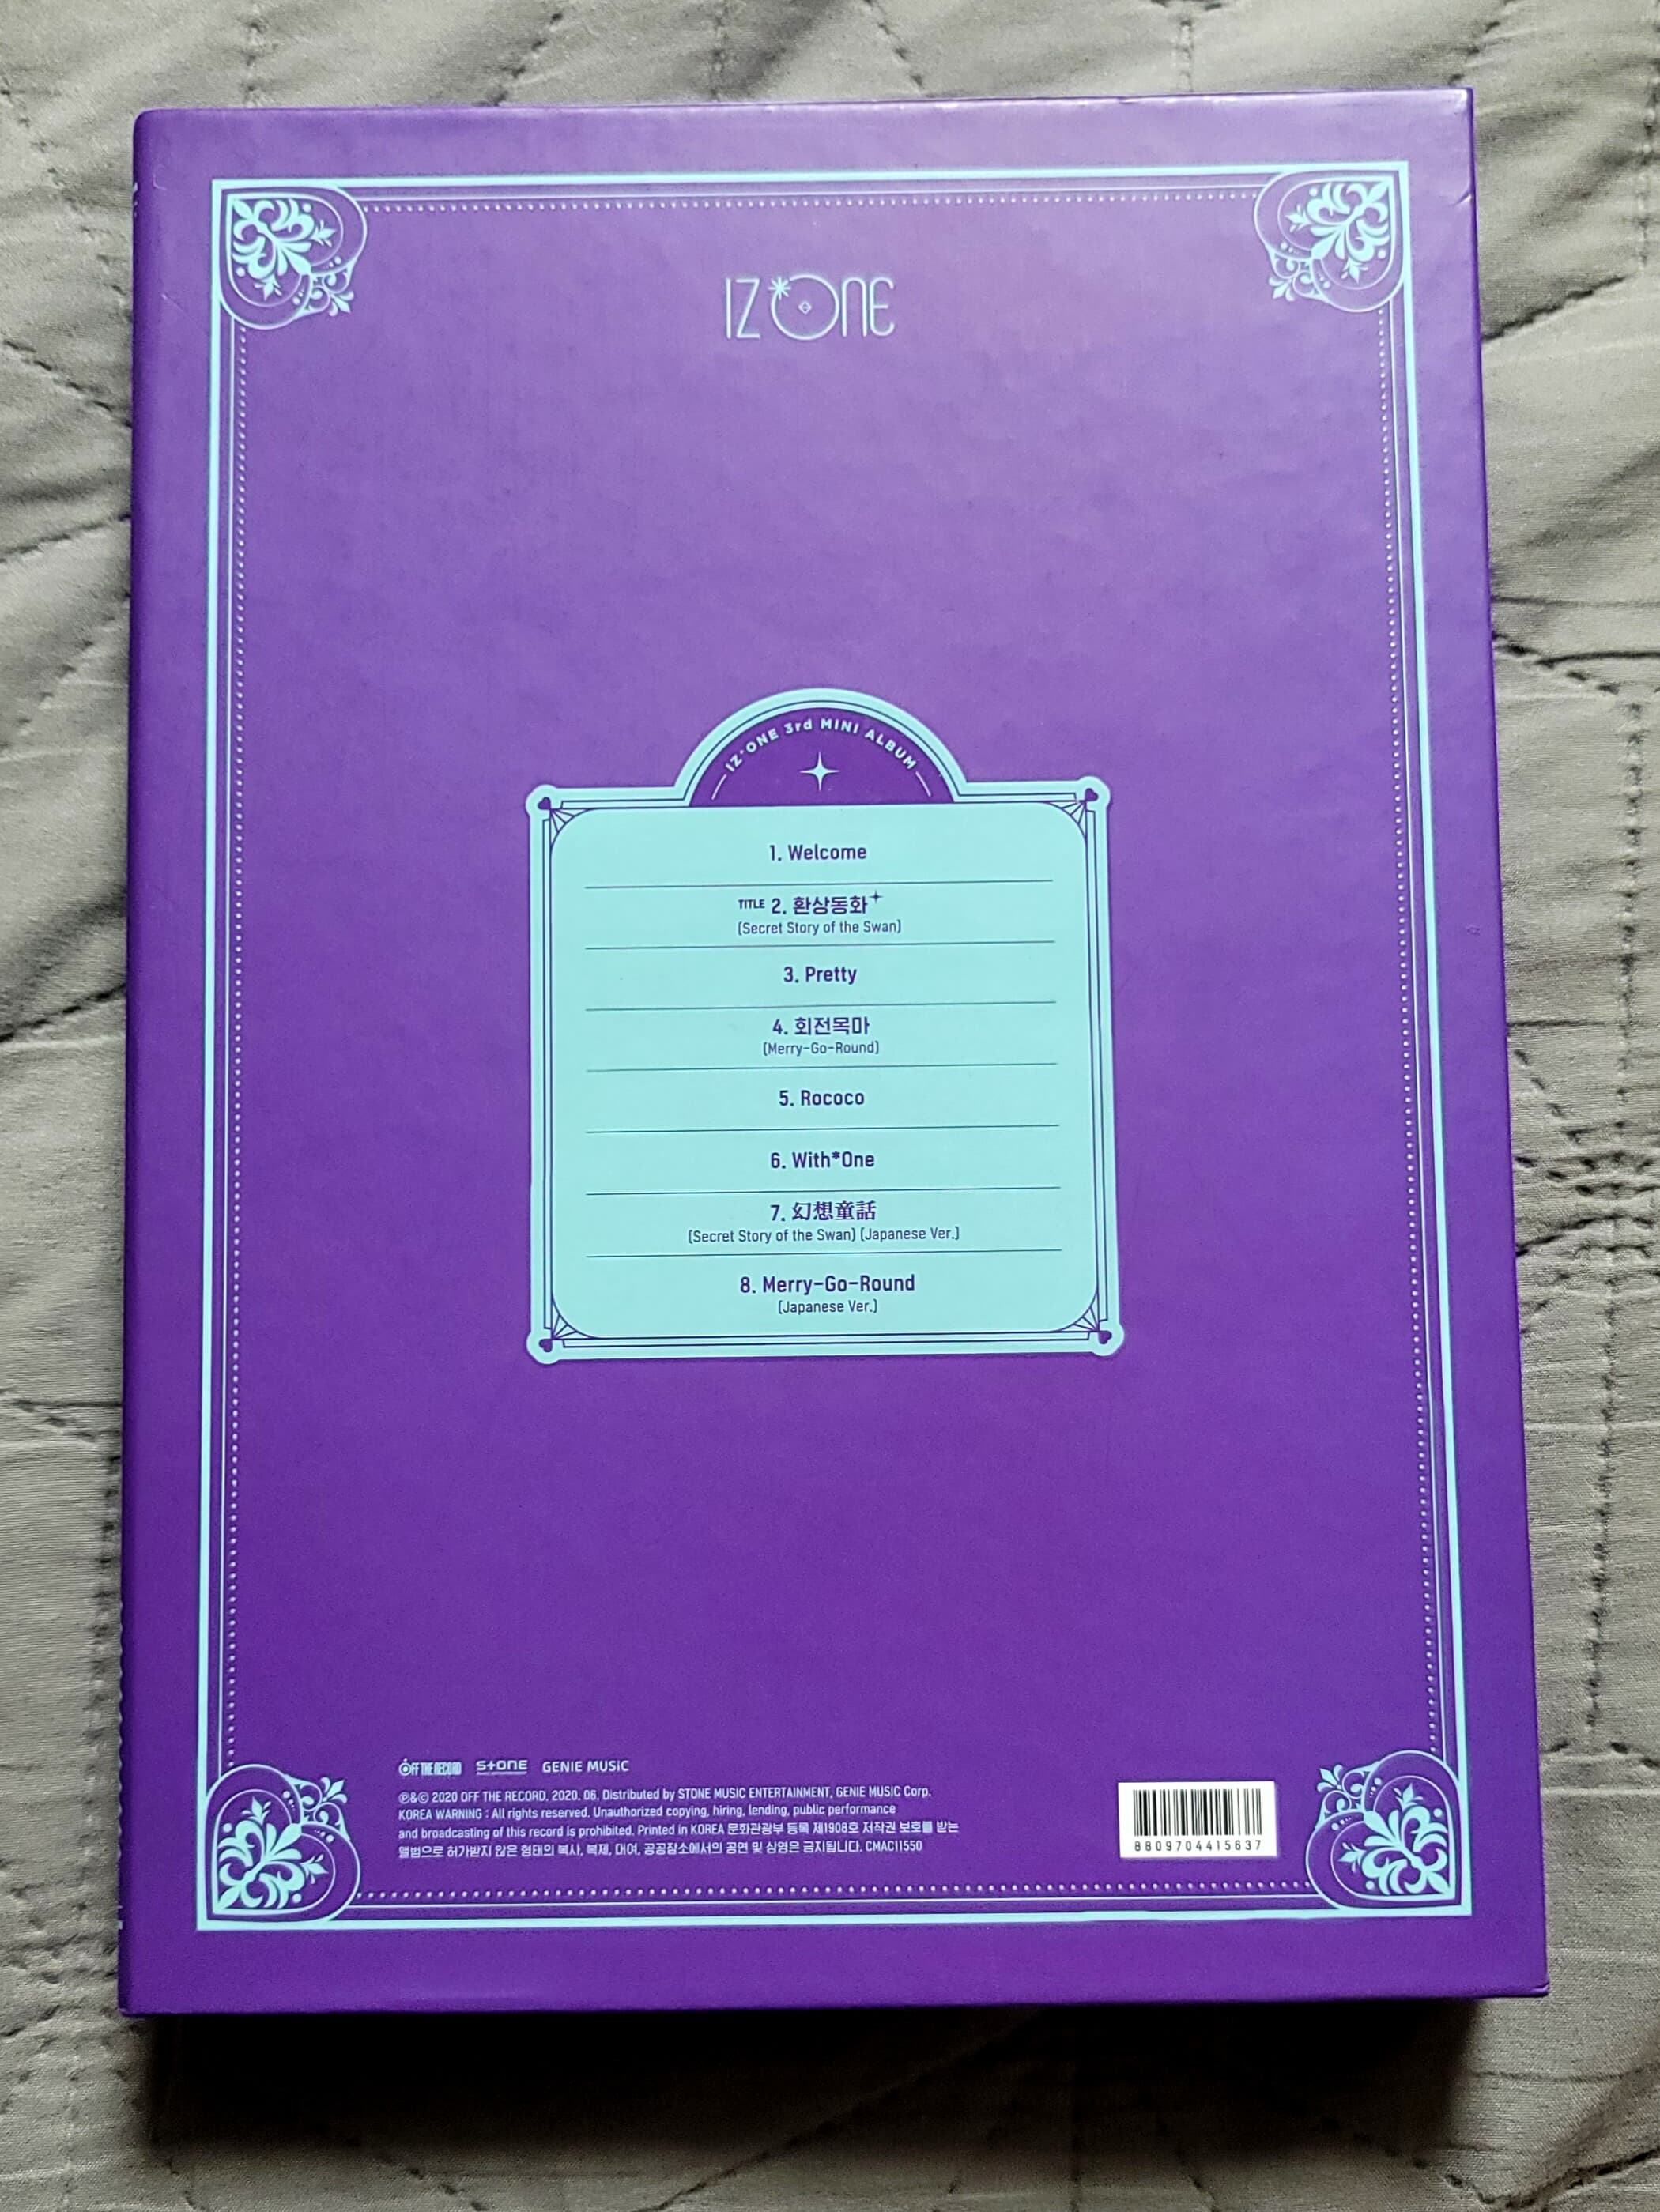 아이즈원 (IZONE) - 미니앨범 3집 : Oneiric Diary [환상 ver.] 포토북 포함